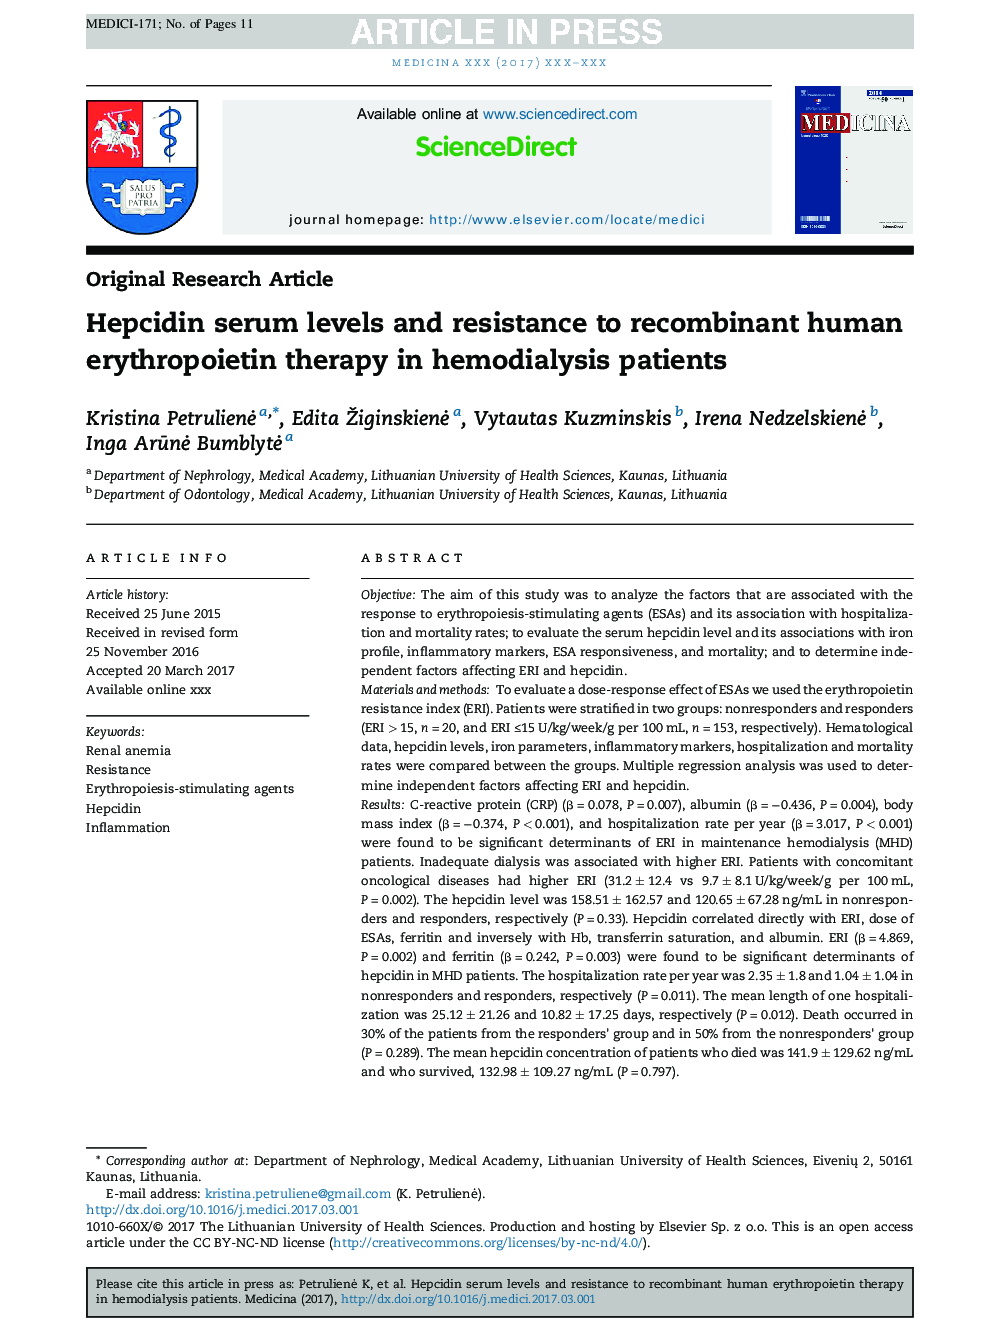 سطح سرمی هپساید و مقاومت در برابر اریتروپویتین نوترکیب انسان در بیماران همودیالیزی 